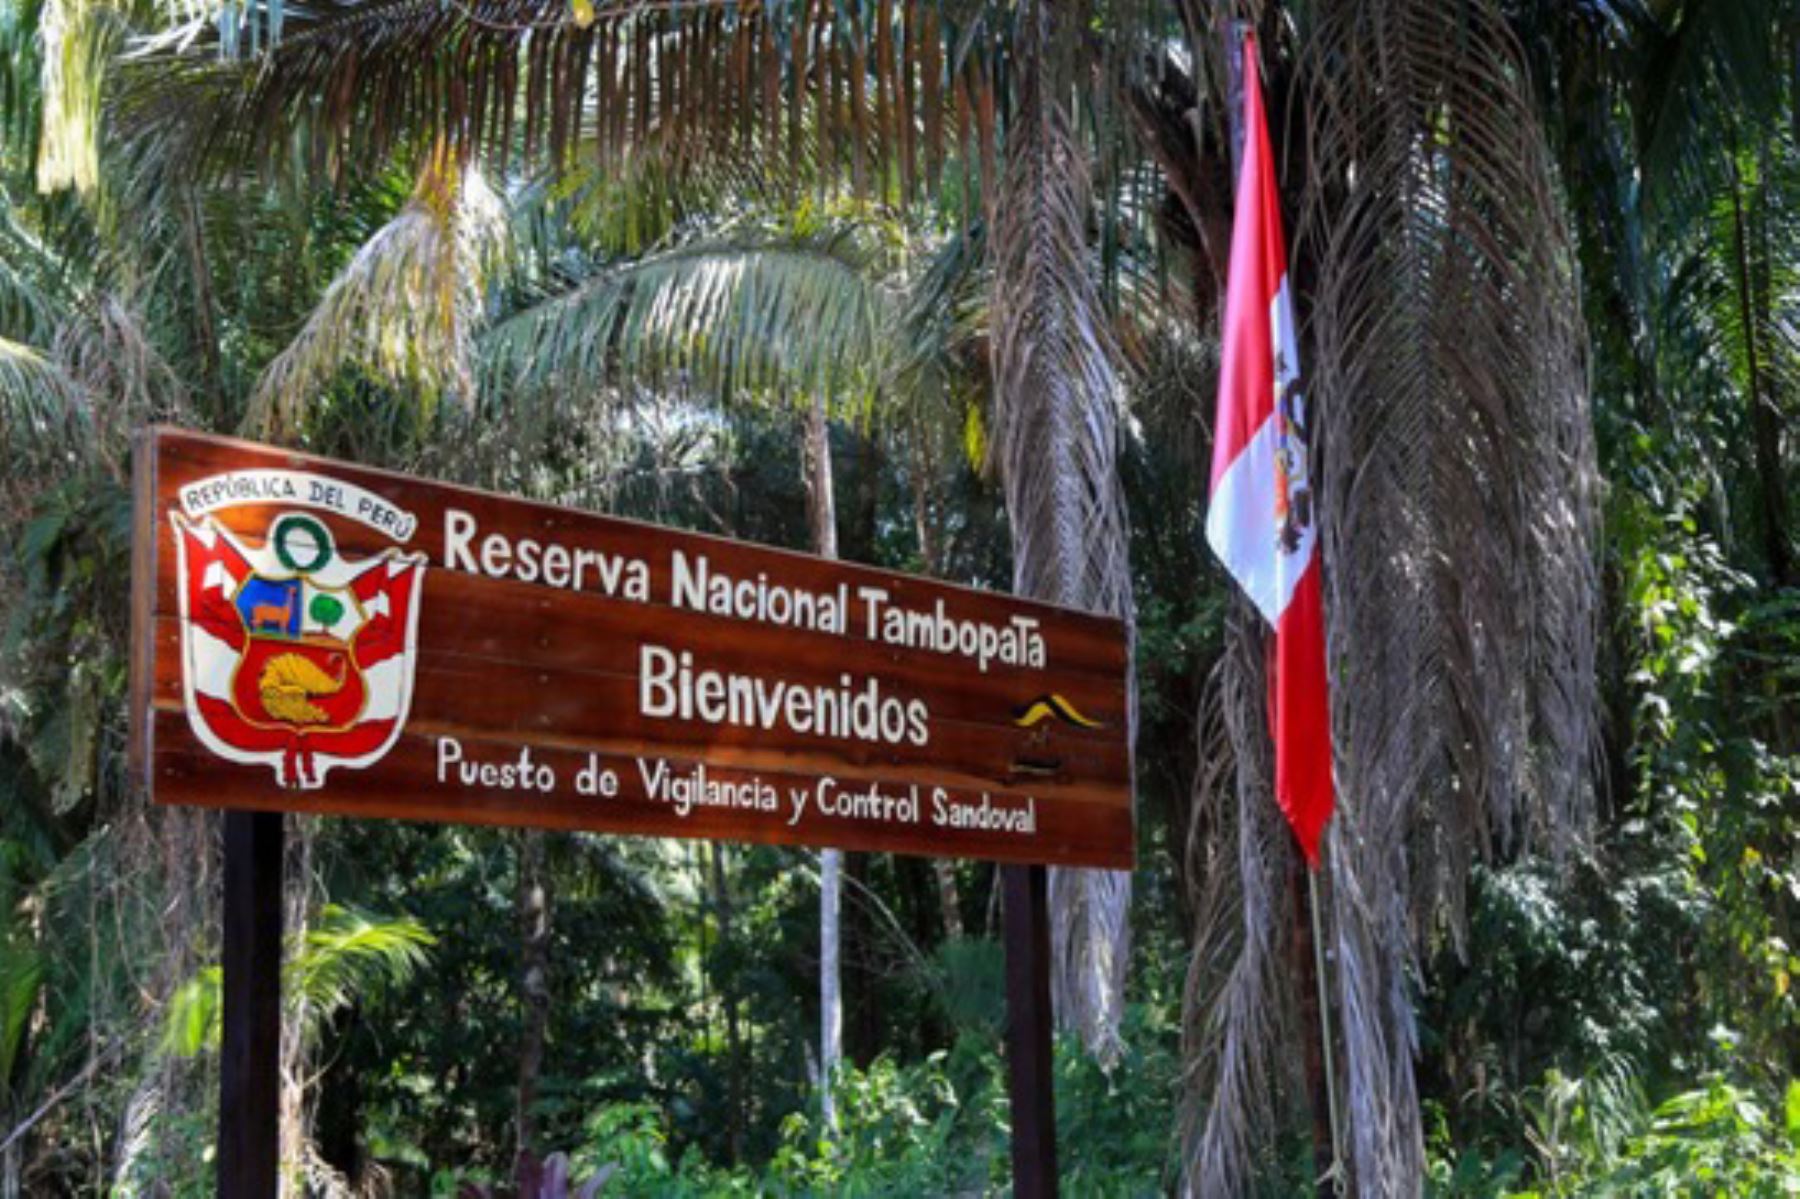 La reserva nacional Tambopata cumple hoy 20 años y es considerada como la joya natural más representativa de la región Madre de Dios. Foto: ANDINA/Difusión